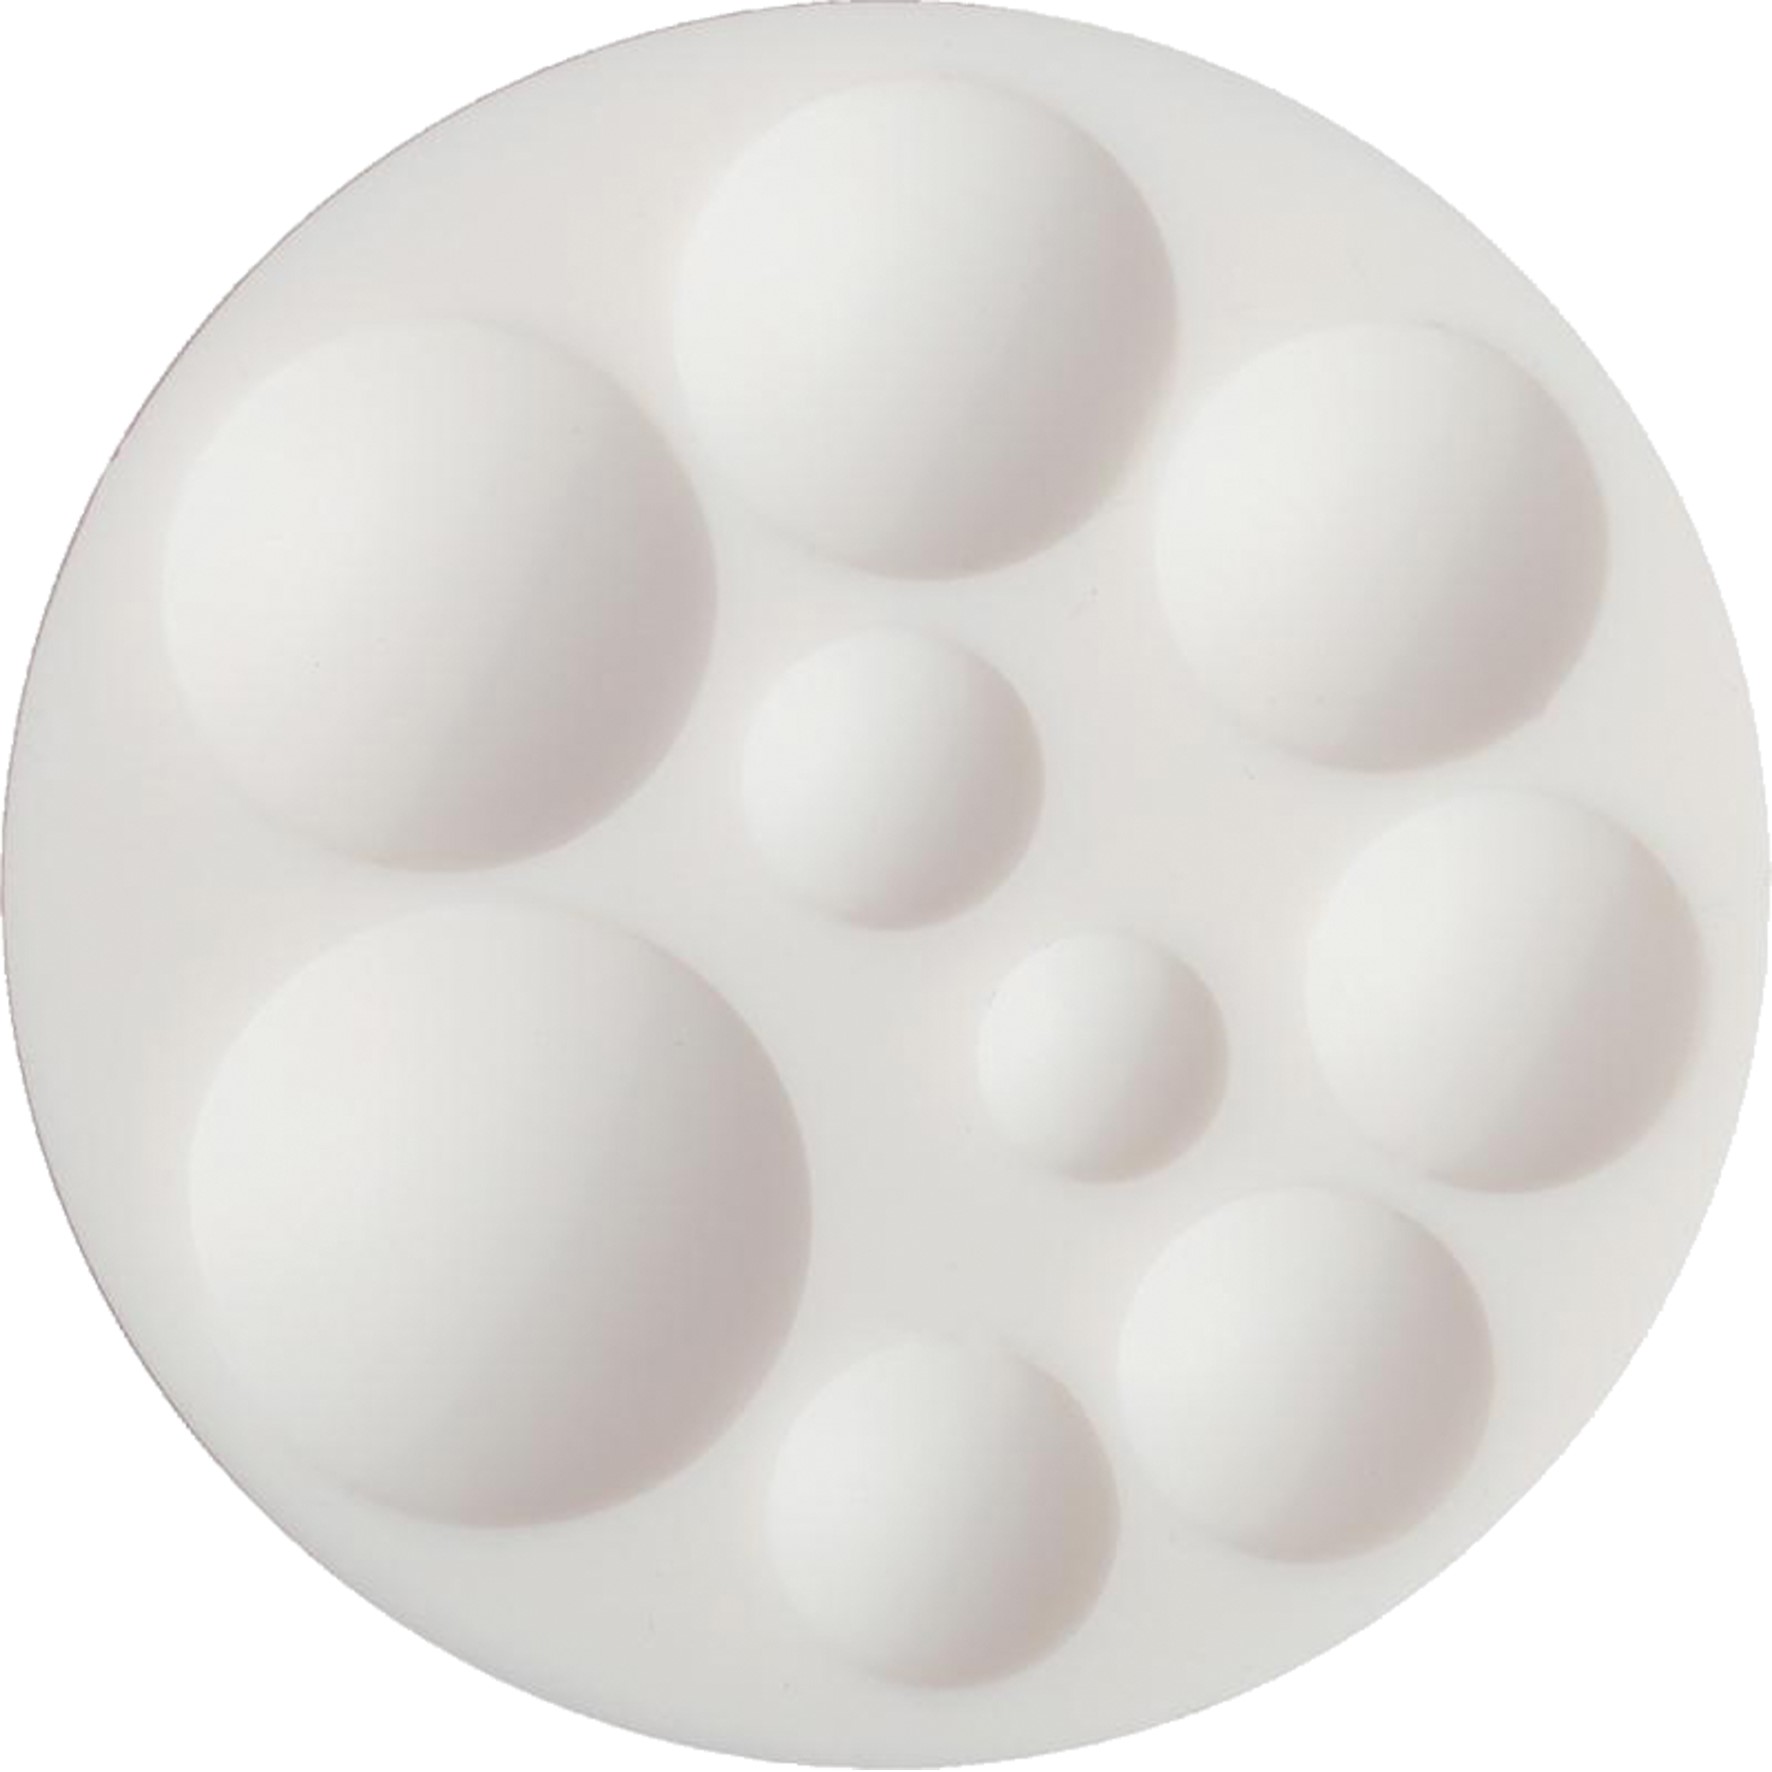 Cernit accessory - white silicone mold